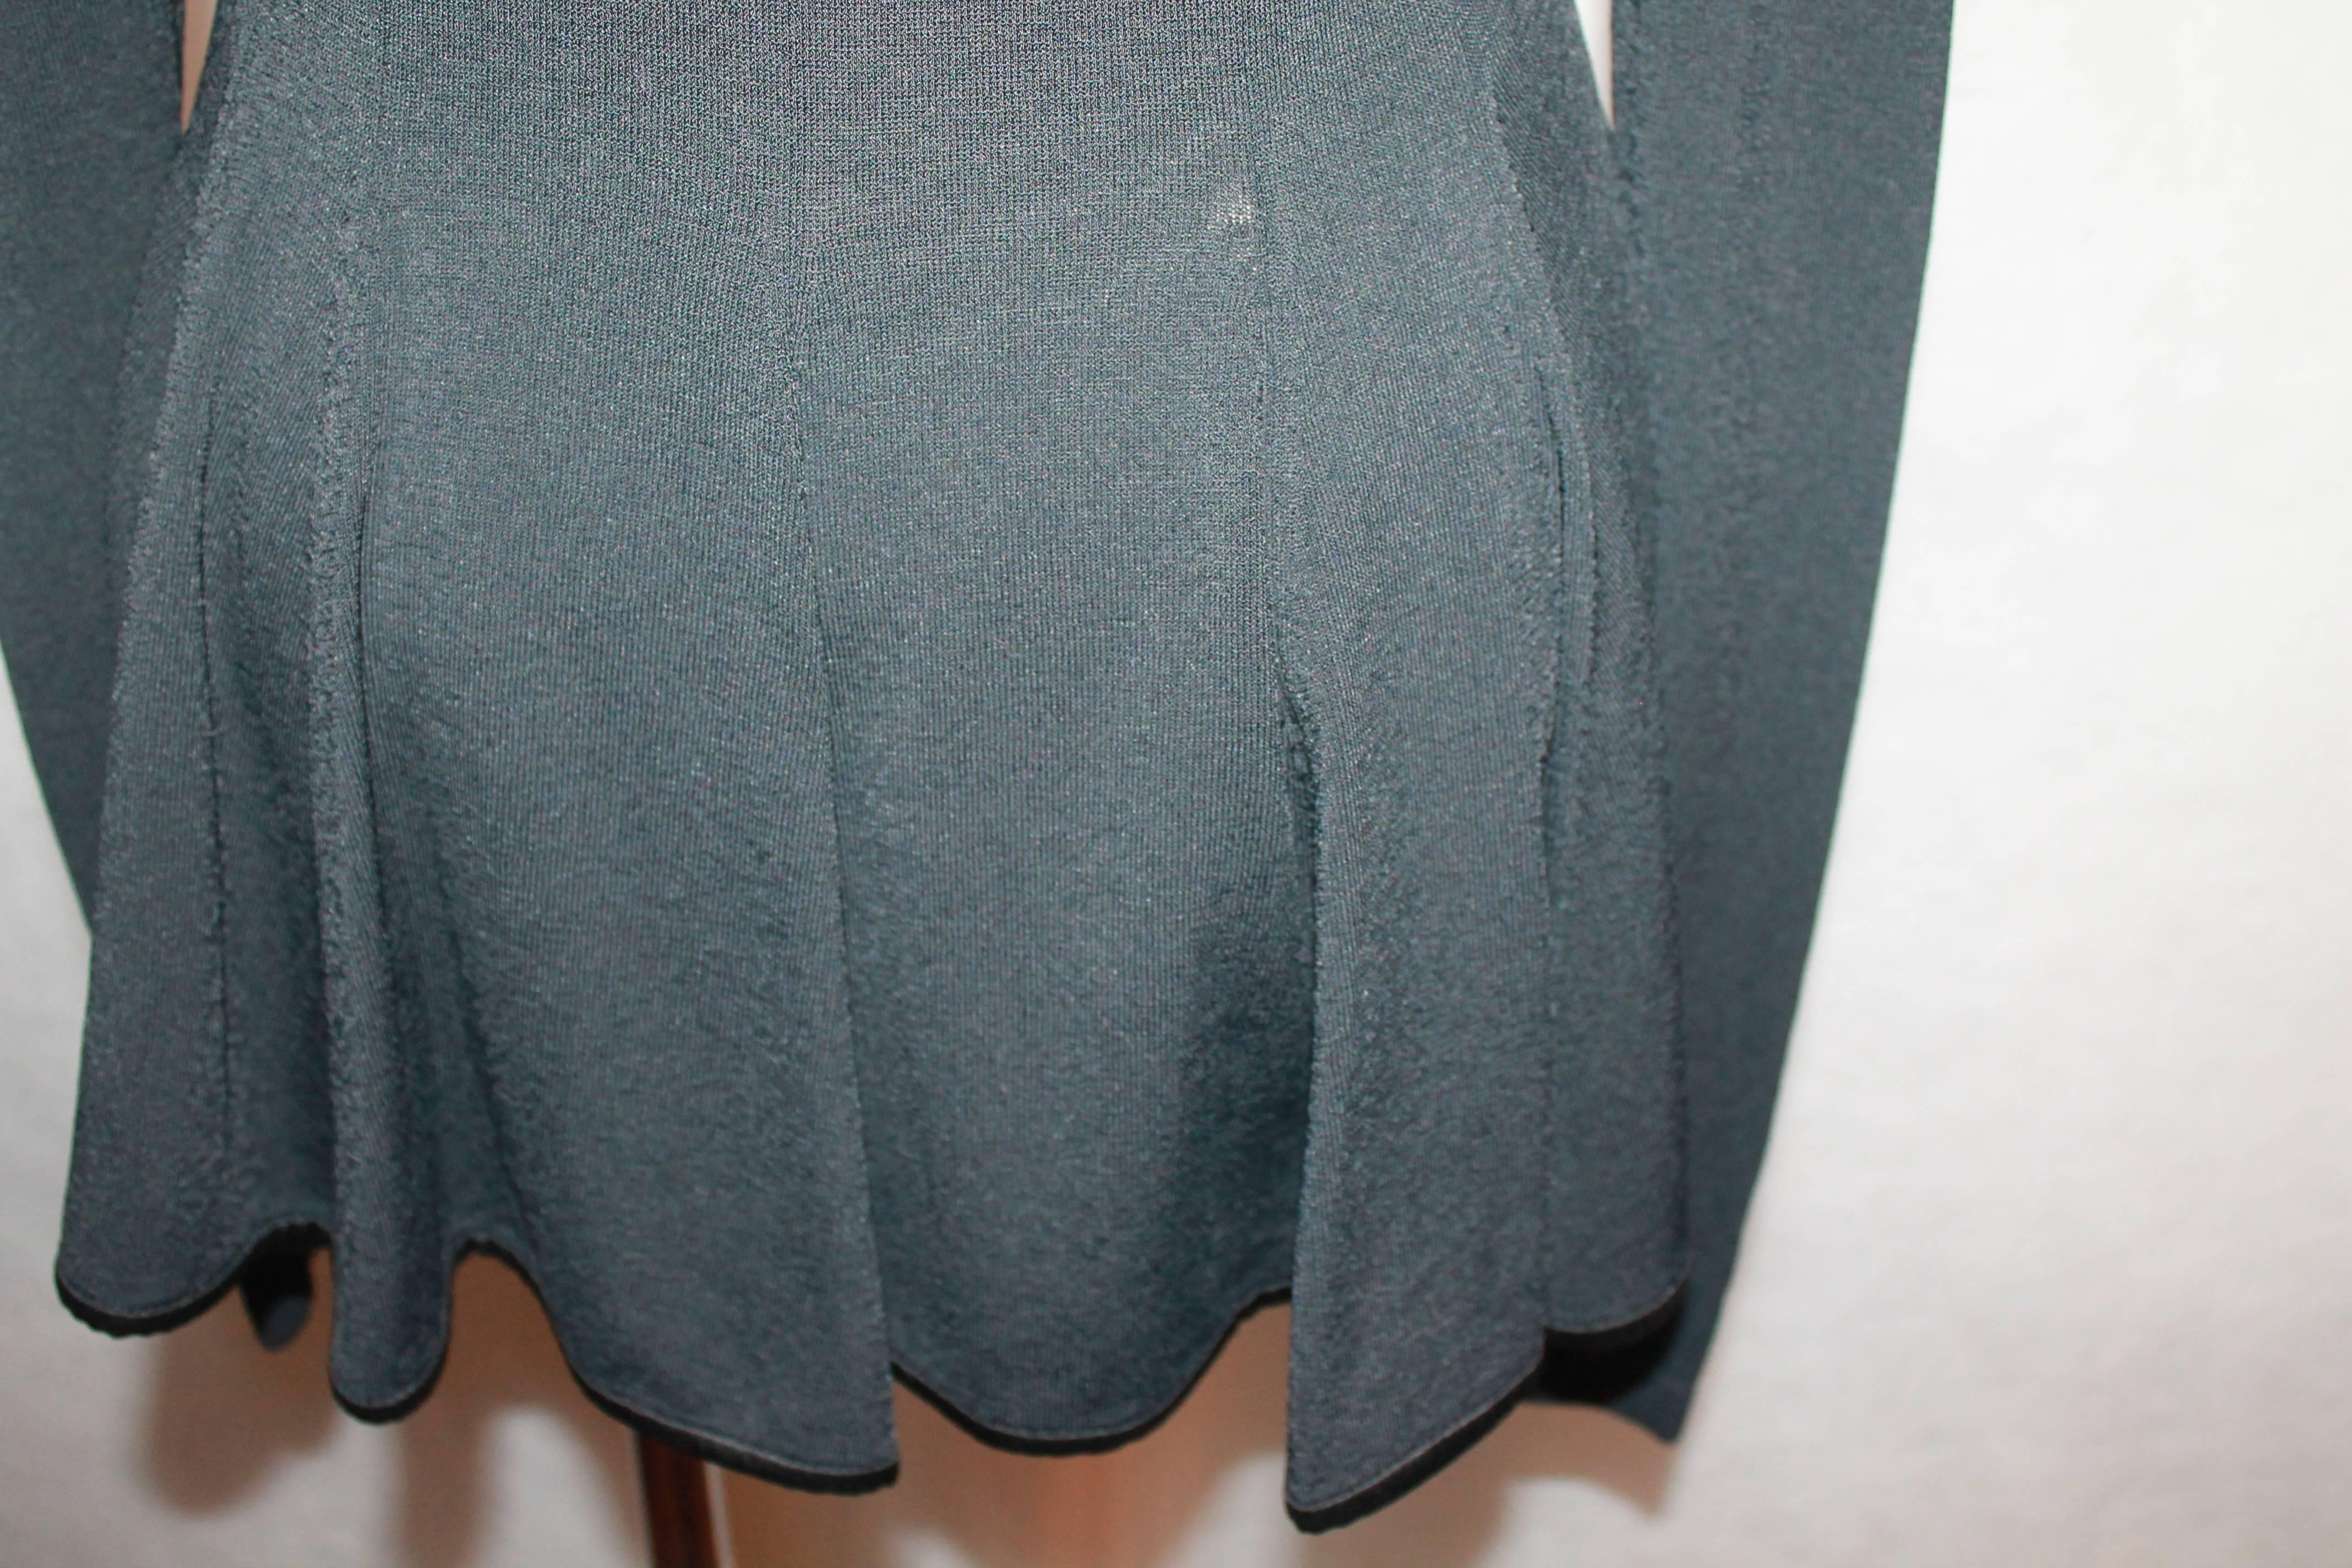 Givenchy Black Long Sleeved Sweater w/ Peplum Back - Medium 1